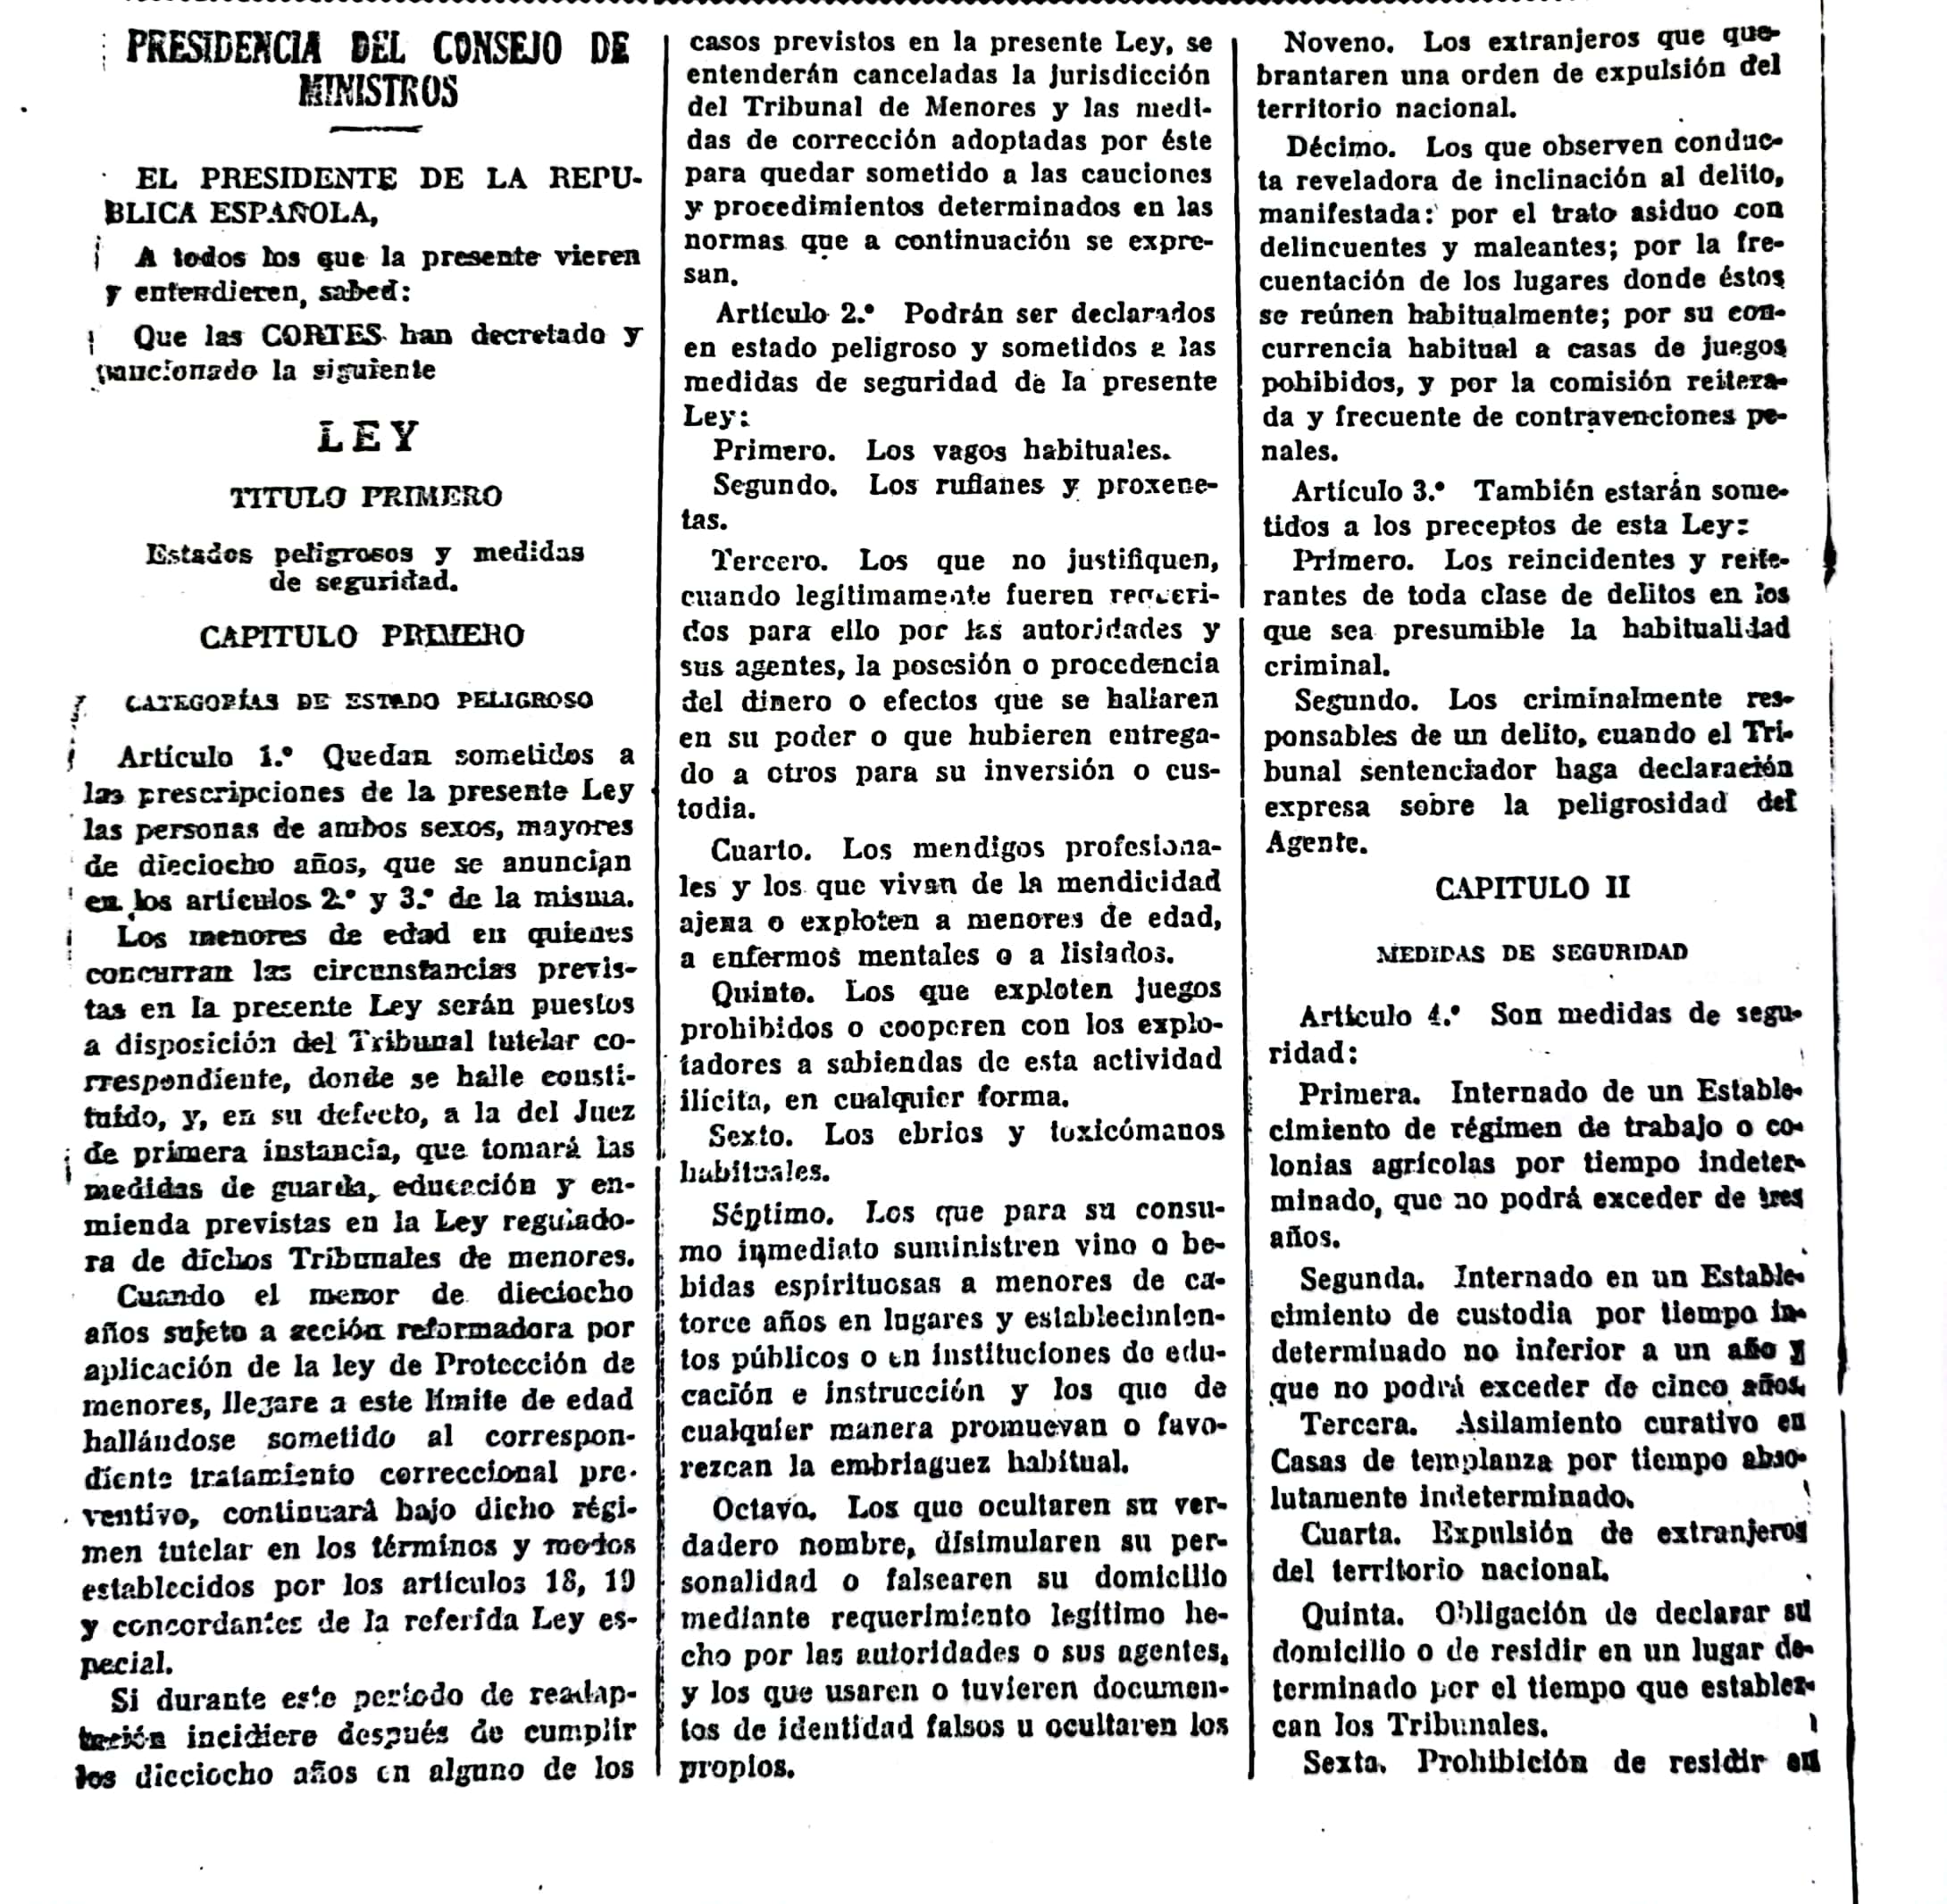 Página 1 del decreto de 1952